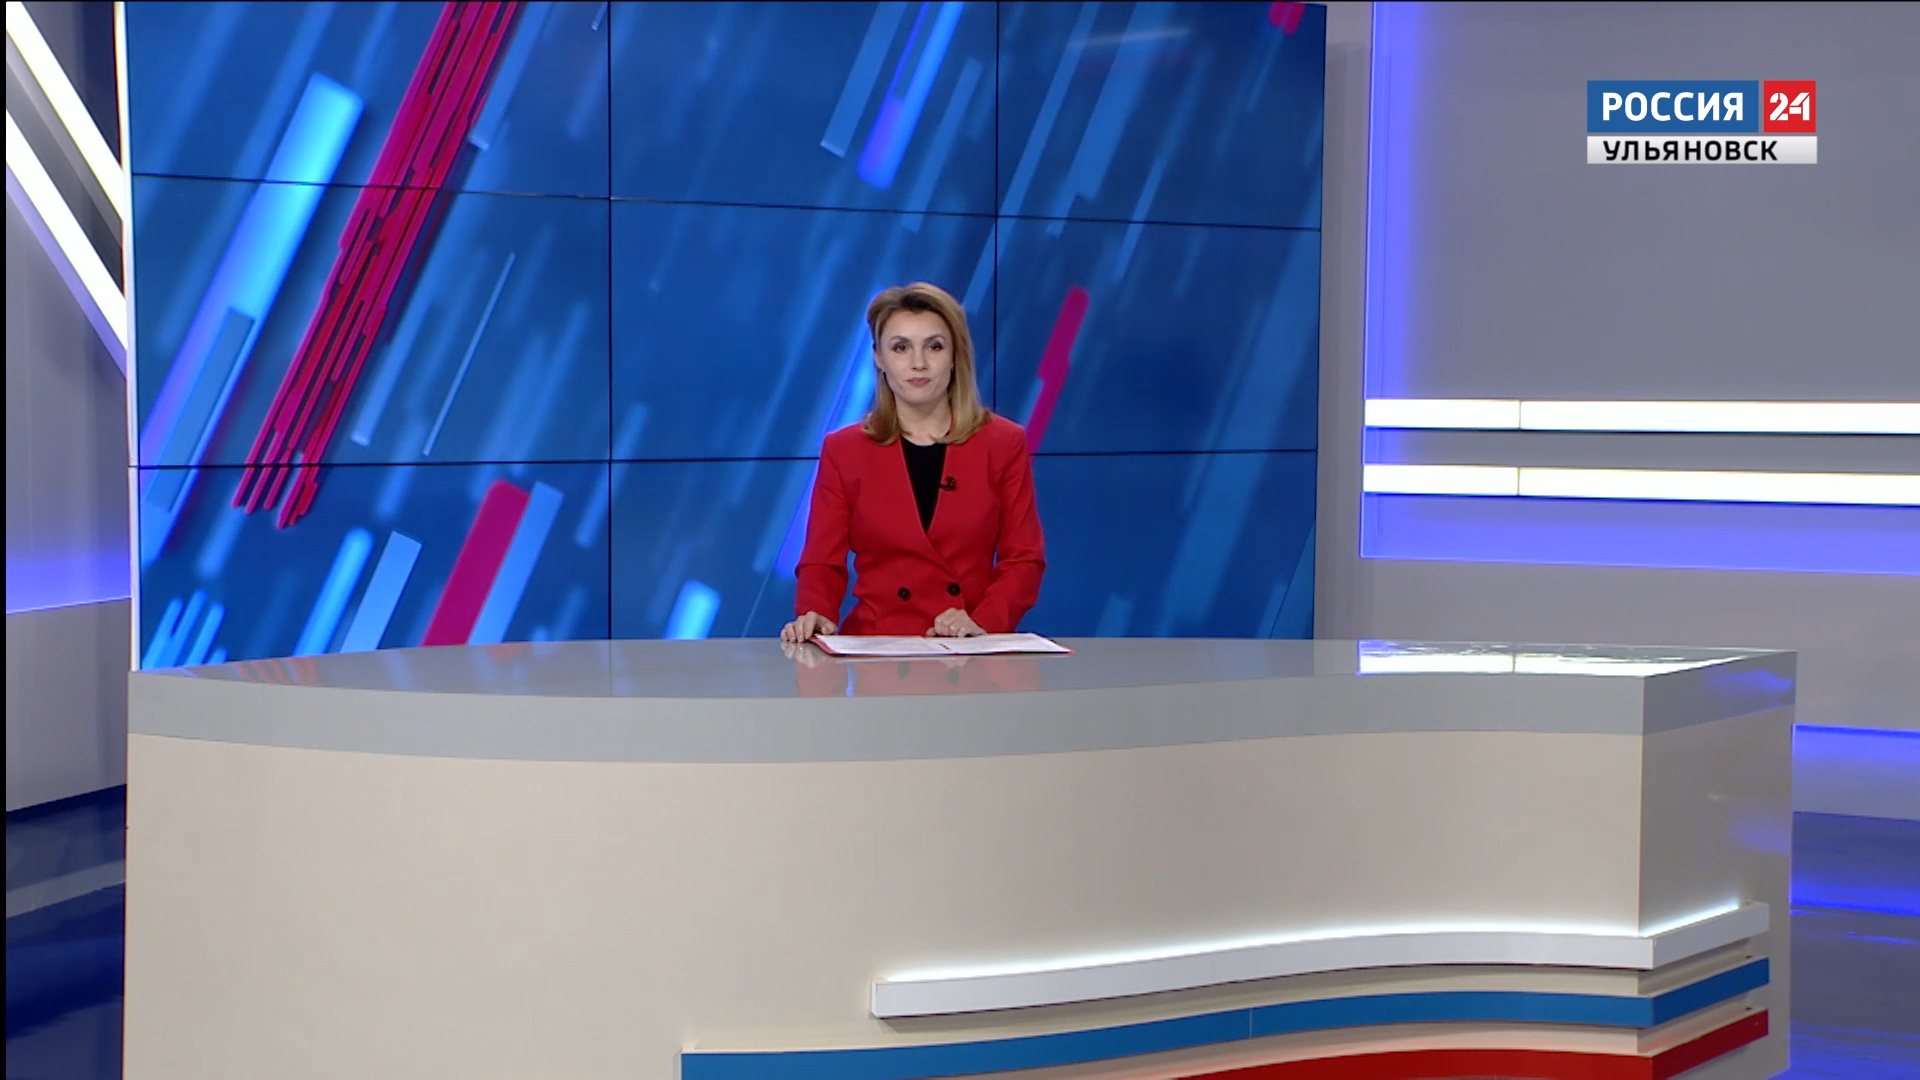 Прямой эфир телеканала россия 24 сейчас. Ведущий новостей. Ведущая вести. Ведущие вести Россия 1 женщины. Передачи 24 канала.